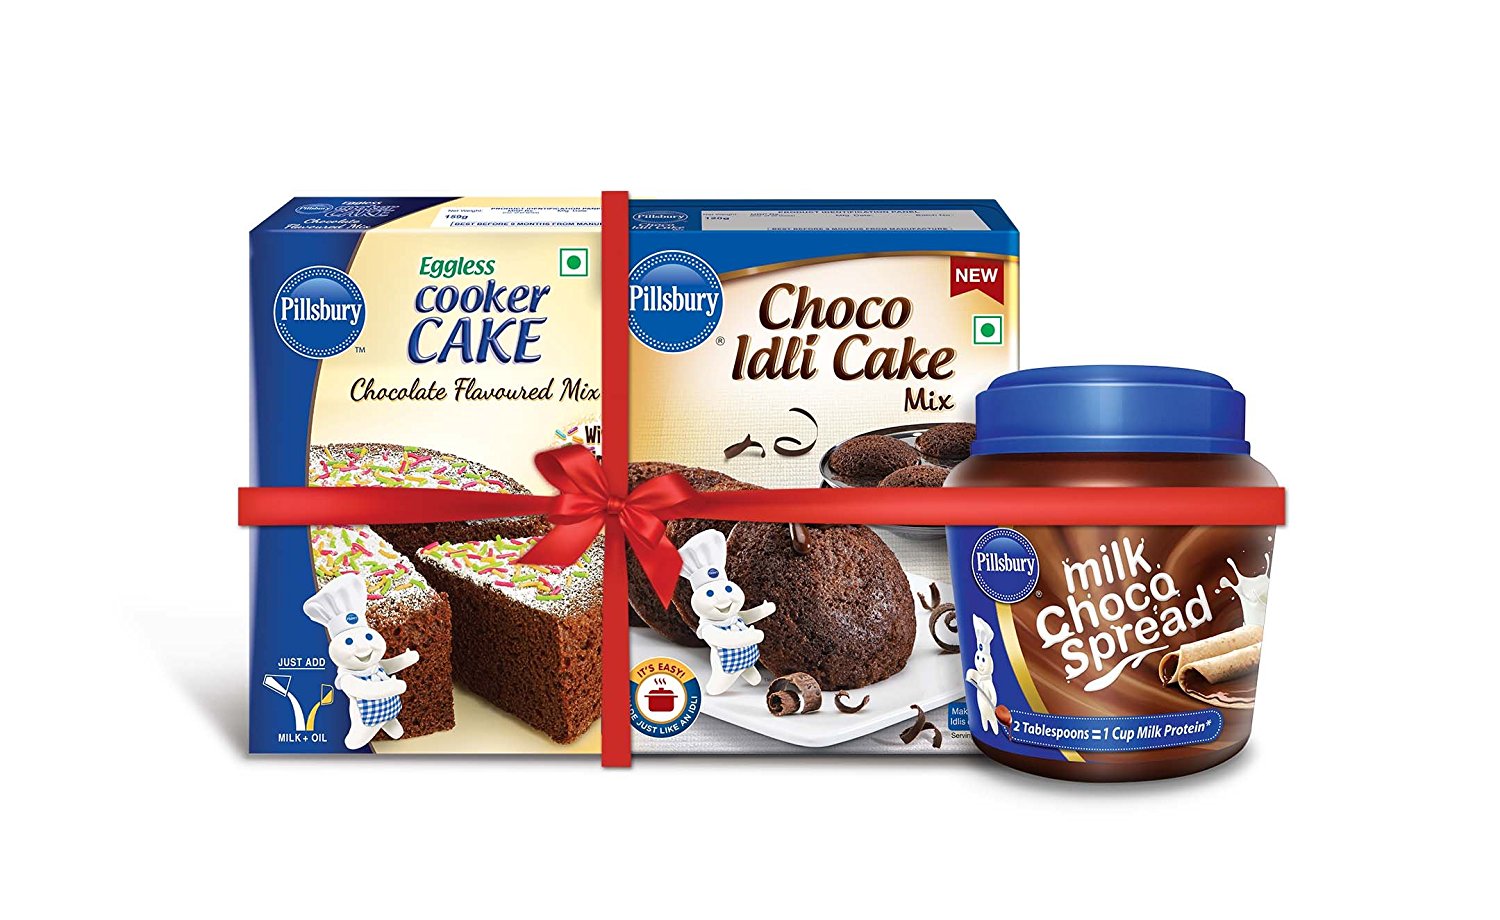 Pillsbury Choco Idli Cake,Cooker Cake mix & milk Chocolate spread (Combo)